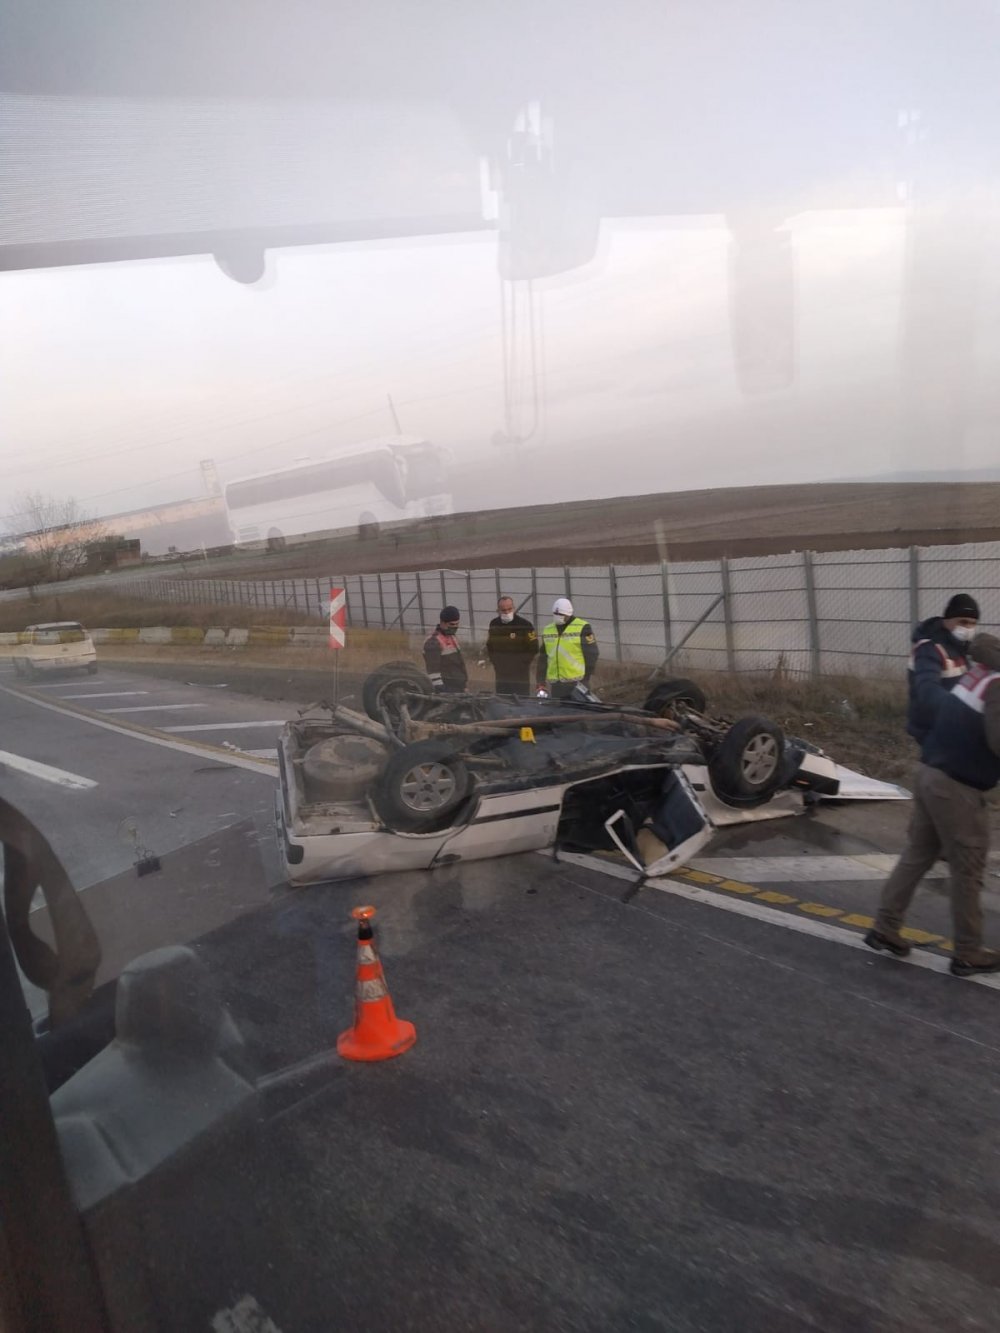 Eskişehir’de aşırı hız sonucu meydana geldiği belirtilen trafik kazasında, aynı araçta bulunan 2 kişi hayatını kaybetti, 1 kişi yaralandı.